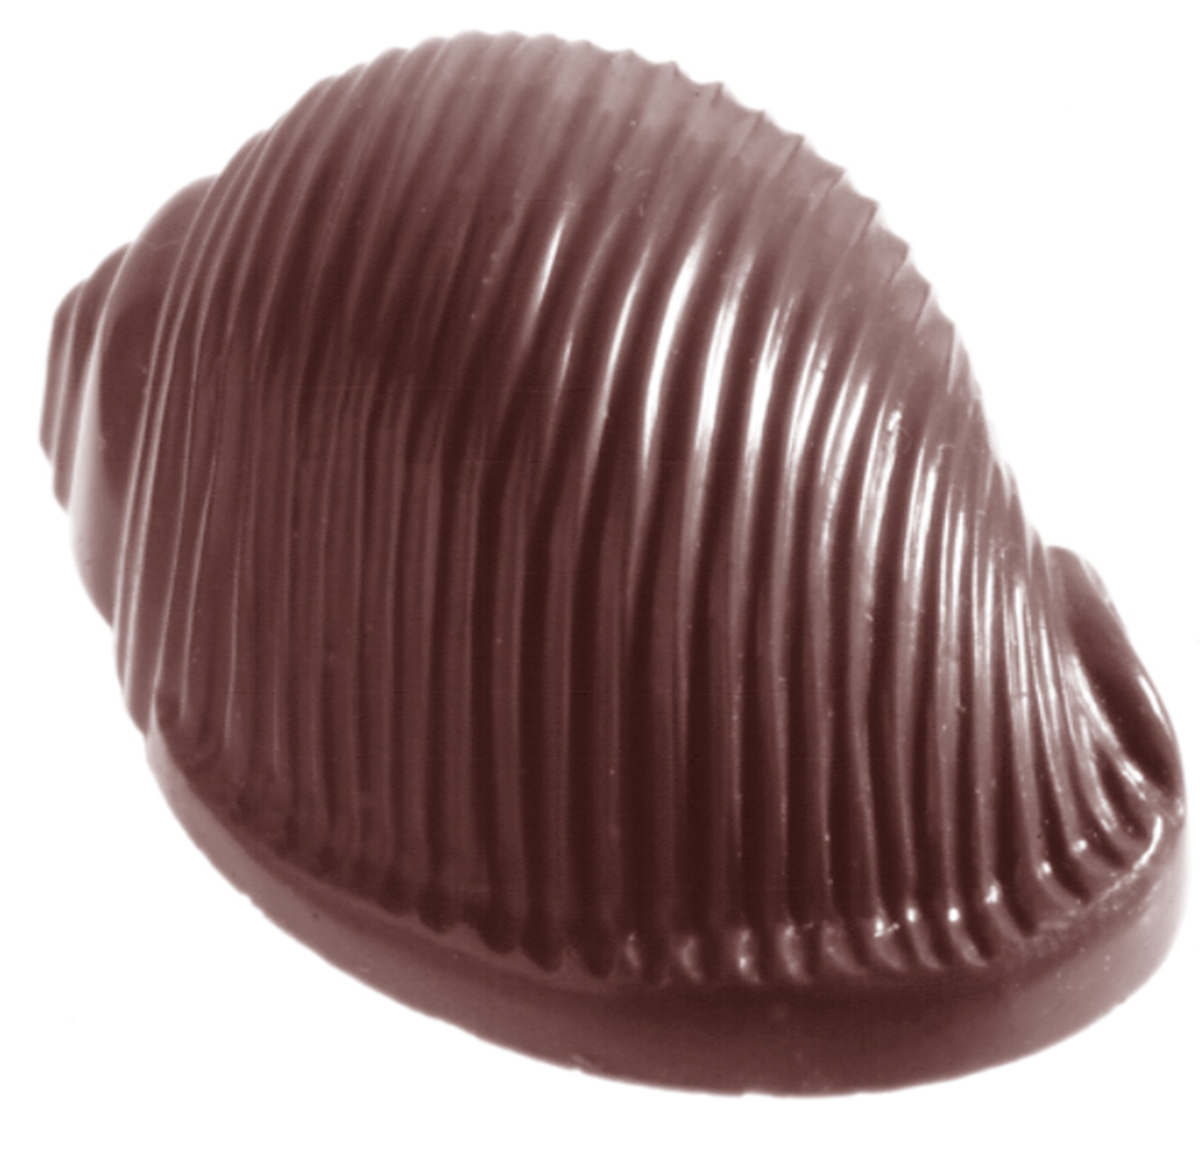 Professionel chokoladeform i polycarbonat - Shell CW1011